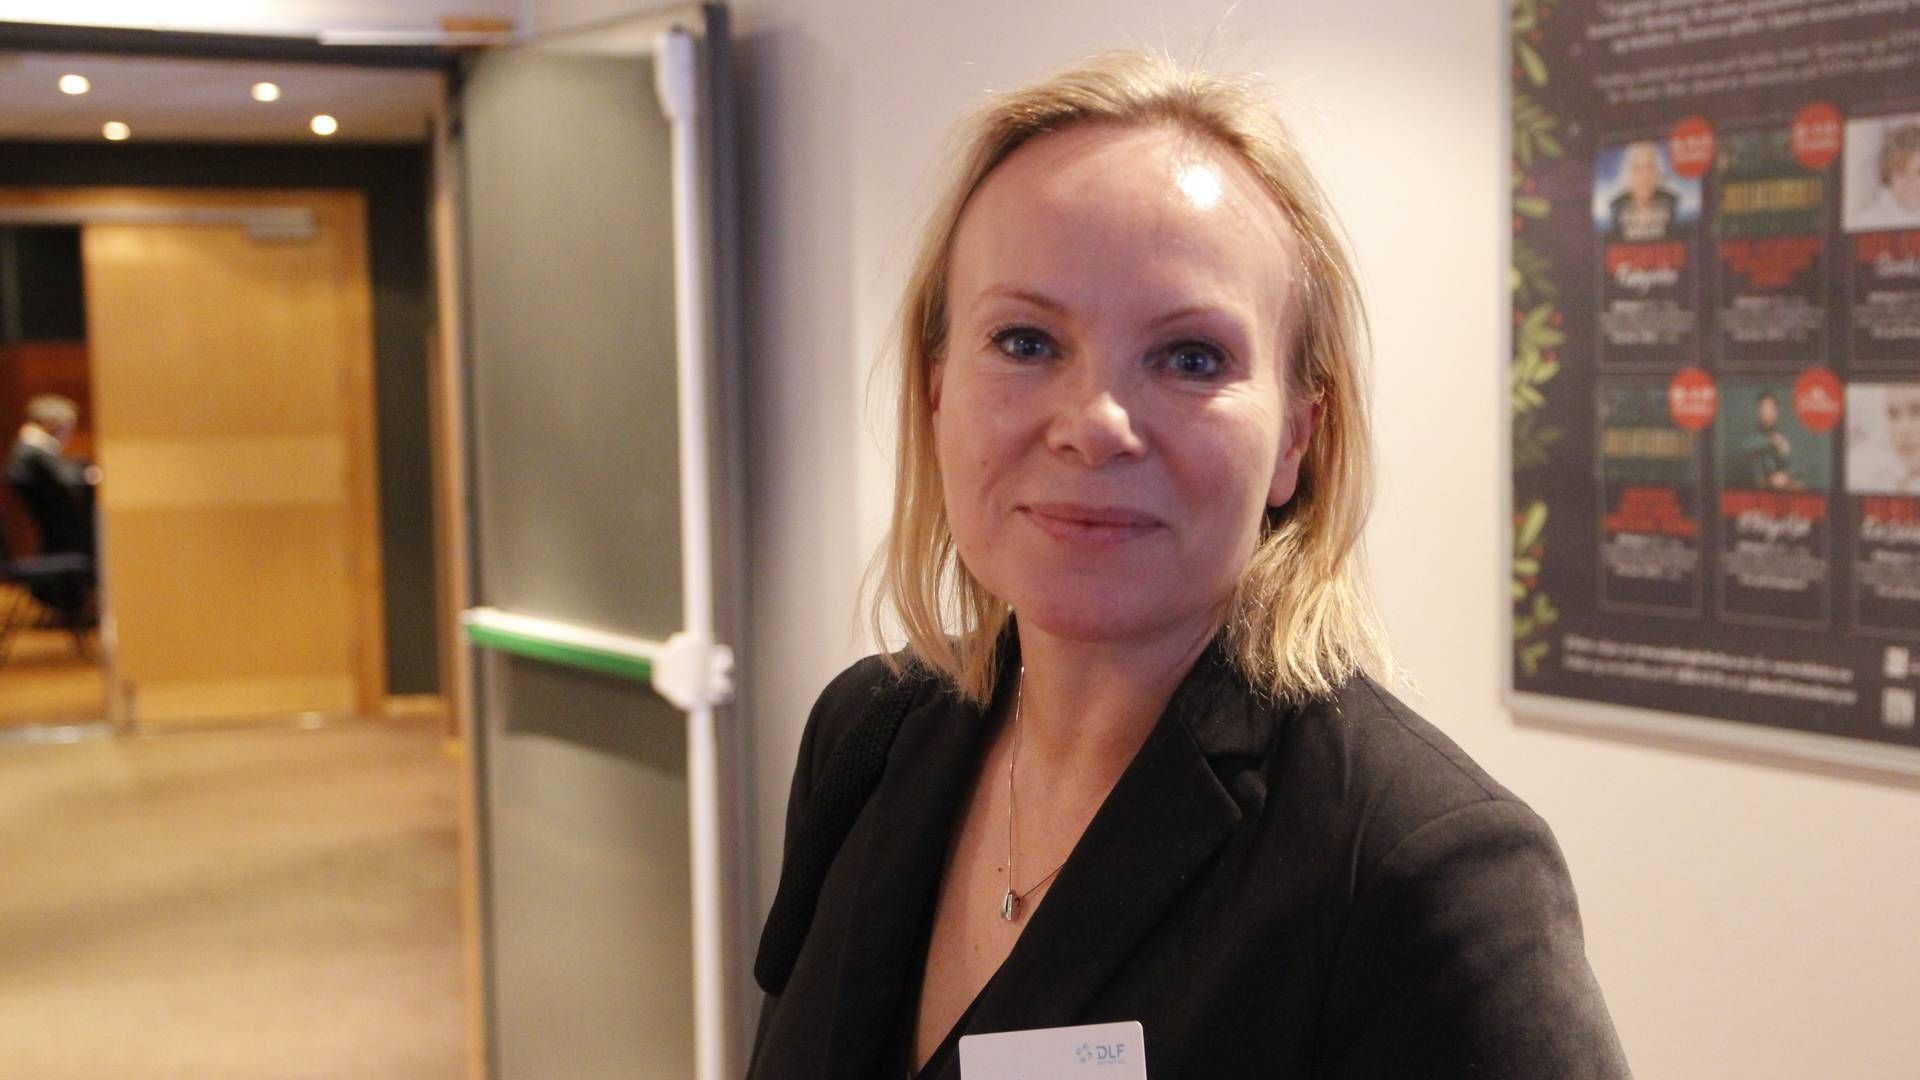 BRA VEKST: Linda Vist, direktør for Handel i NHO Service og Handel, sier at bunnen er nådd. | Foto: Øystein Engh